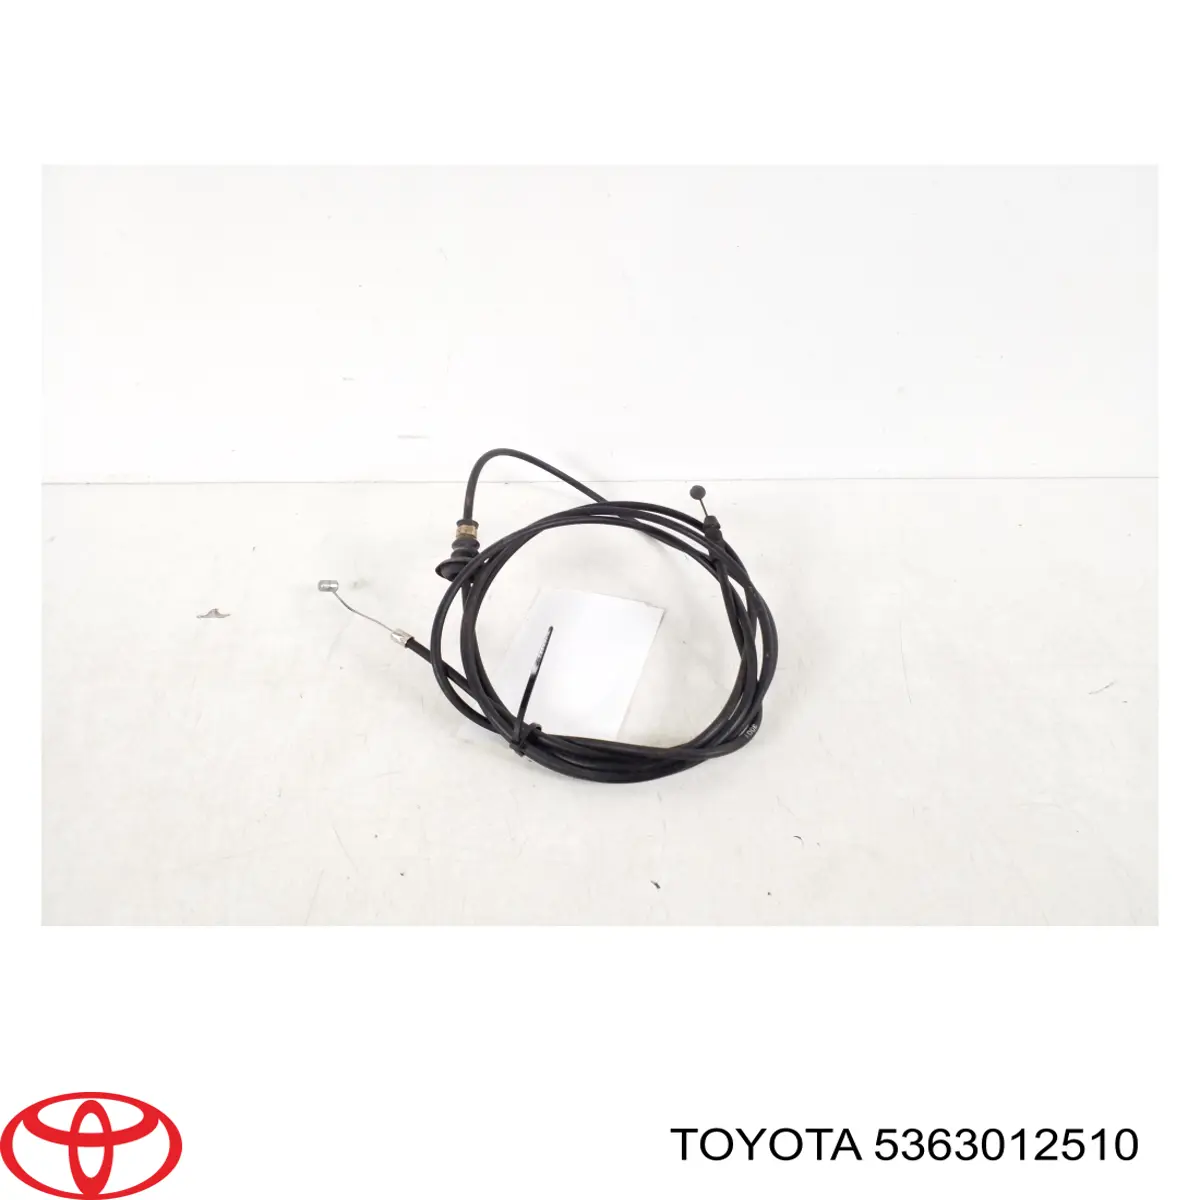 Cable de capó del motor para Toyota Corolla (E12)